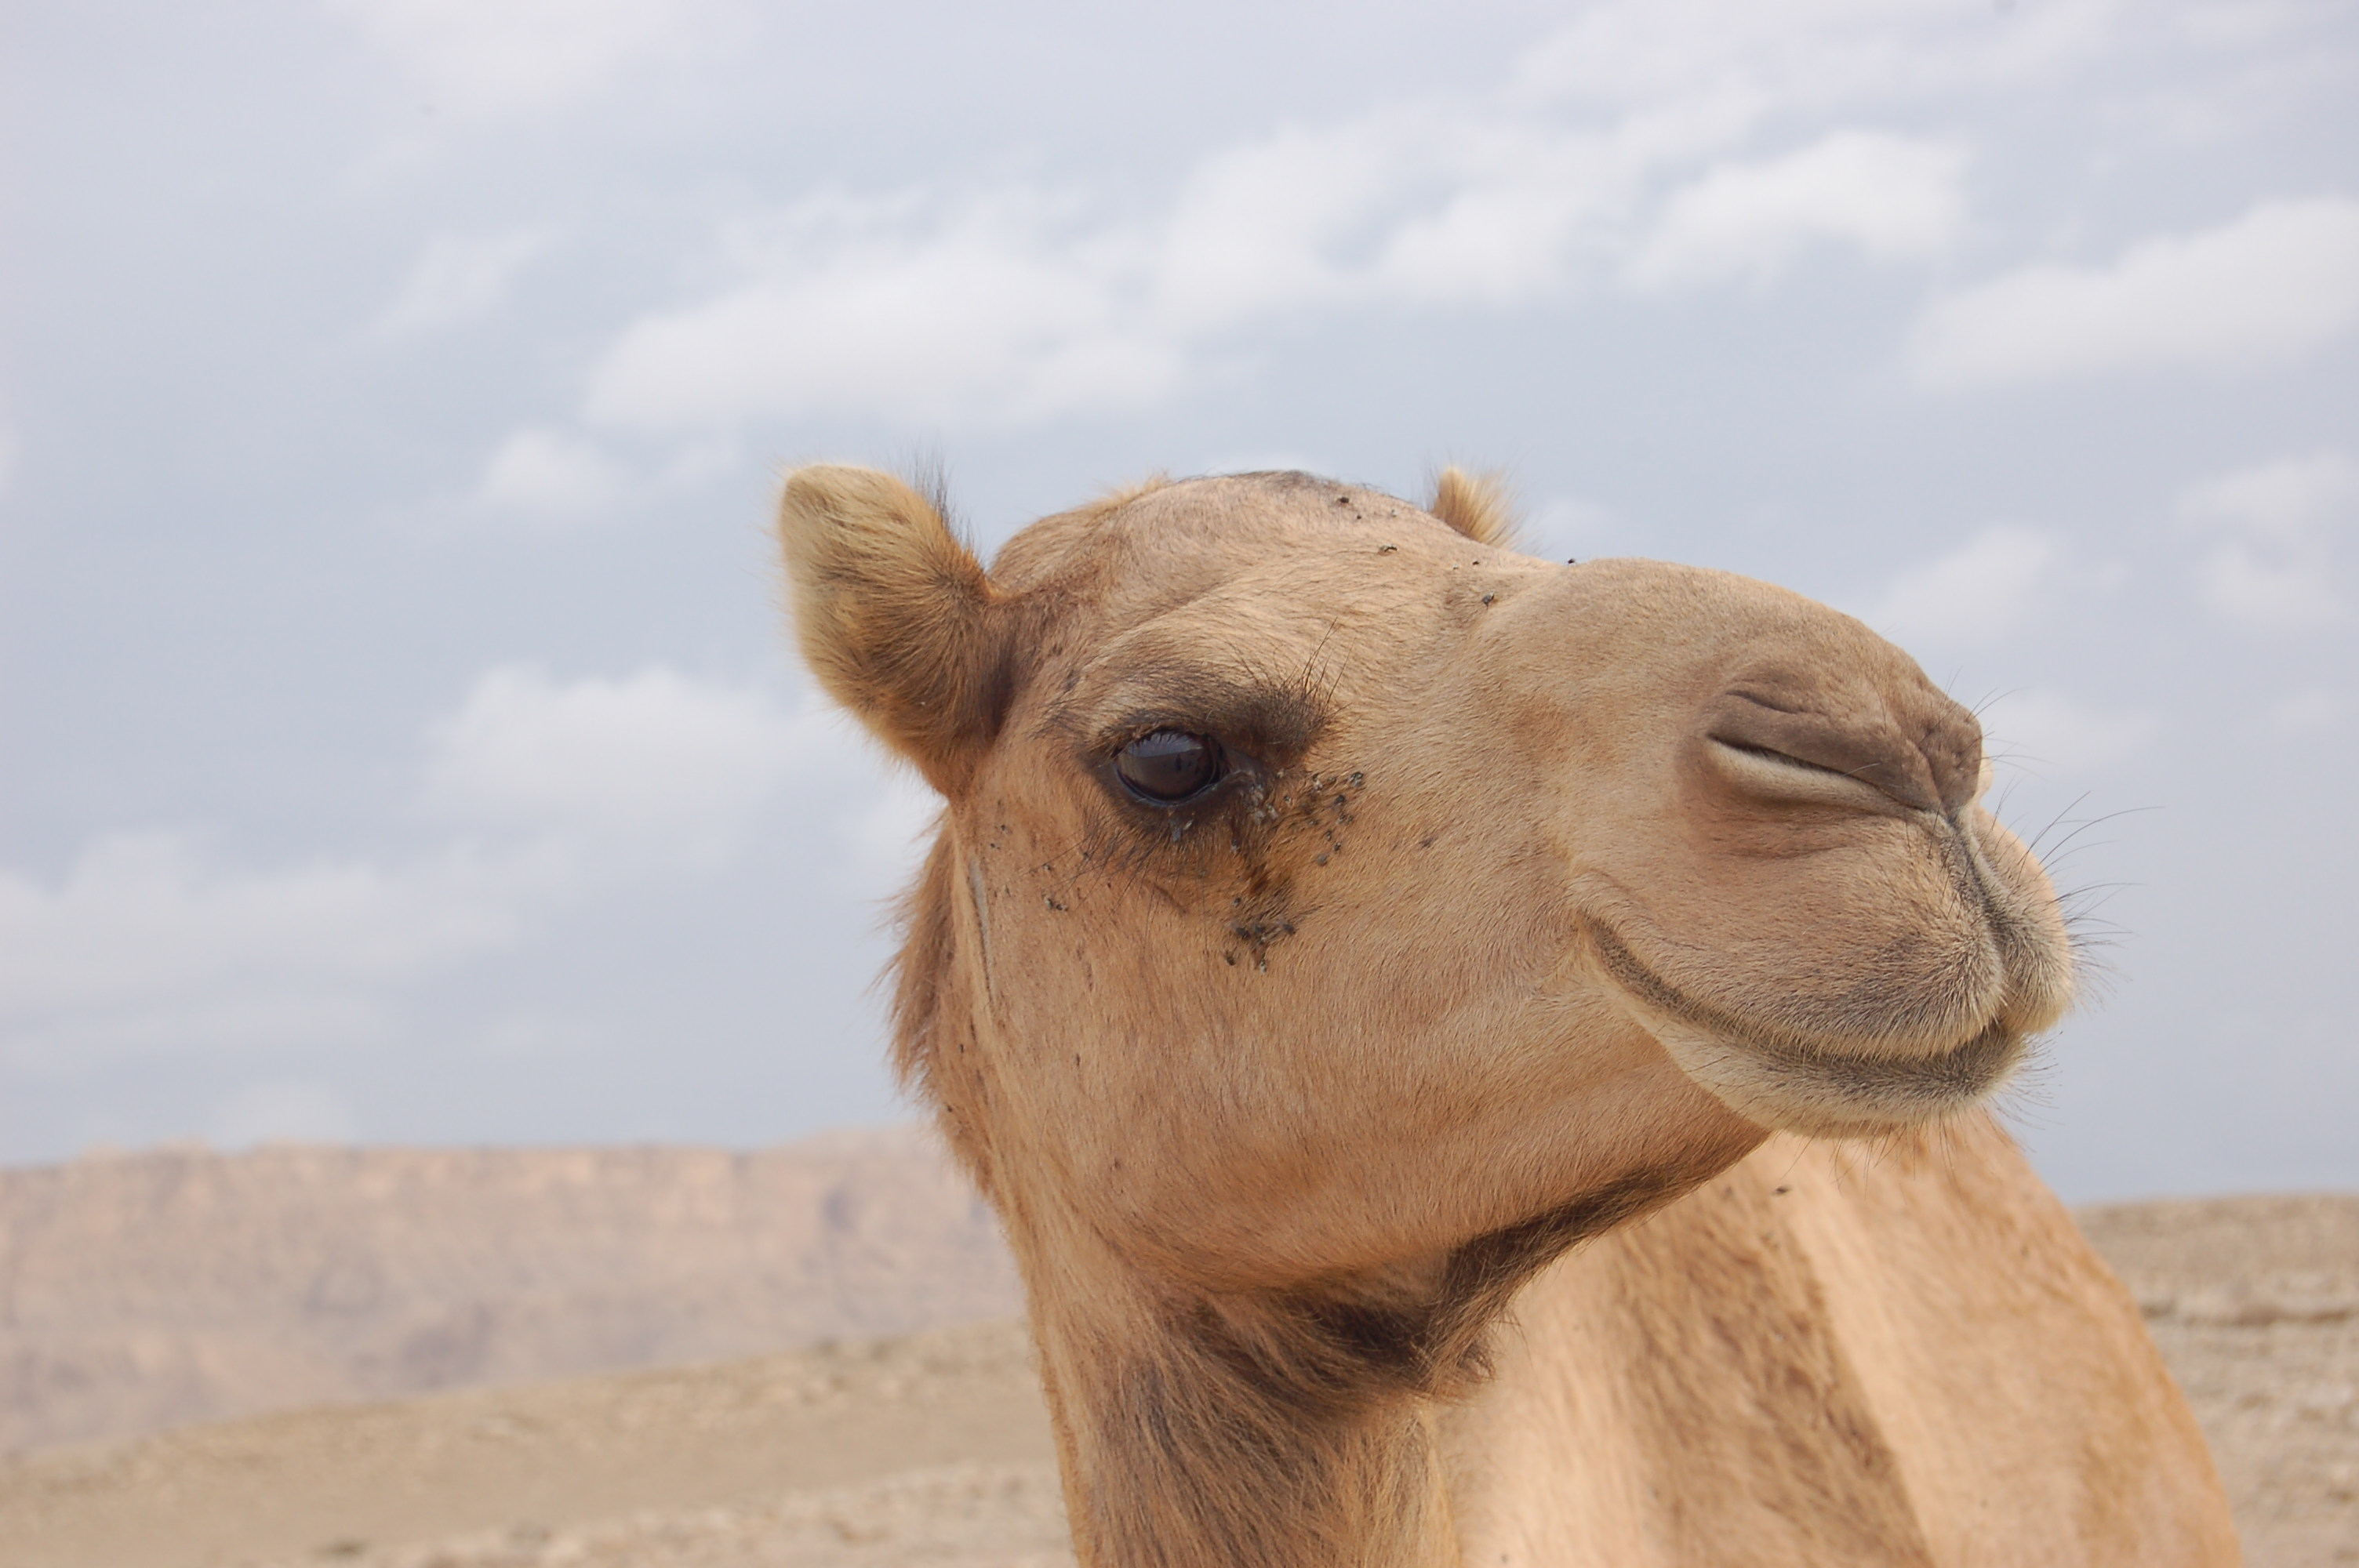 Ship of the desert, Animal, Camel, Desert, Head, HQ Photo